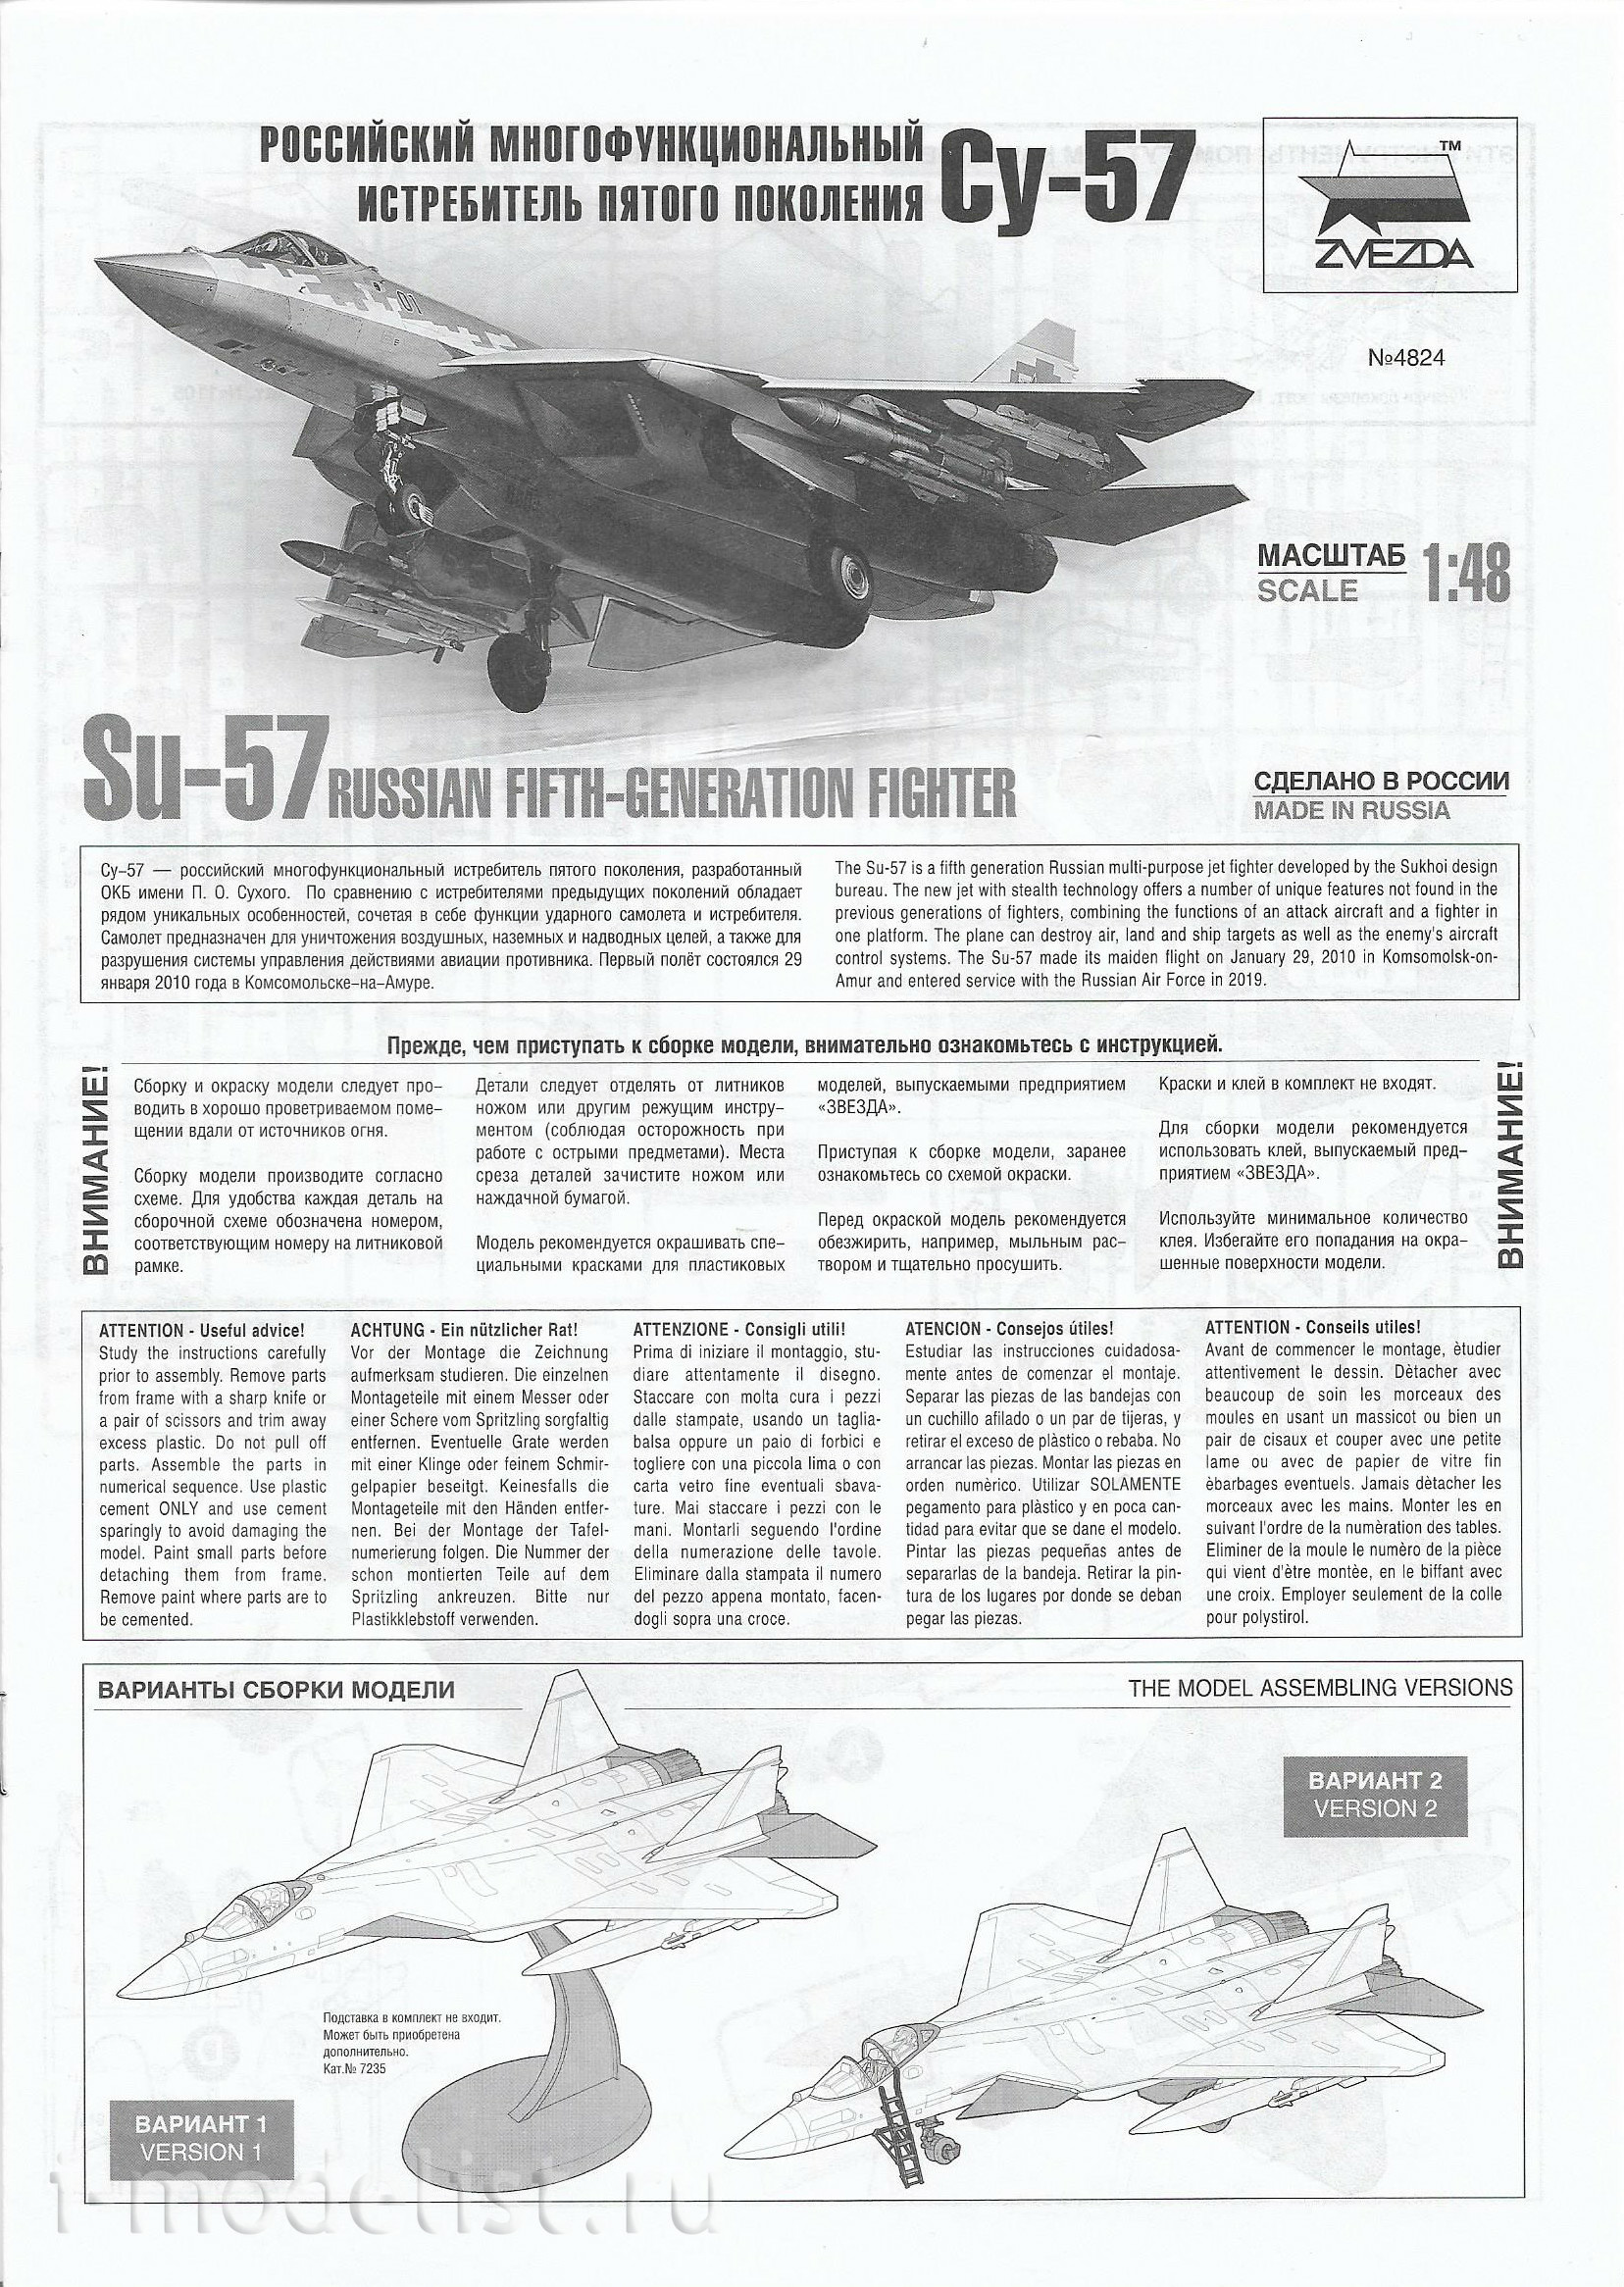 4824 Zvezda 1/48 Russian fifth-generation multi-role fighter Su-57